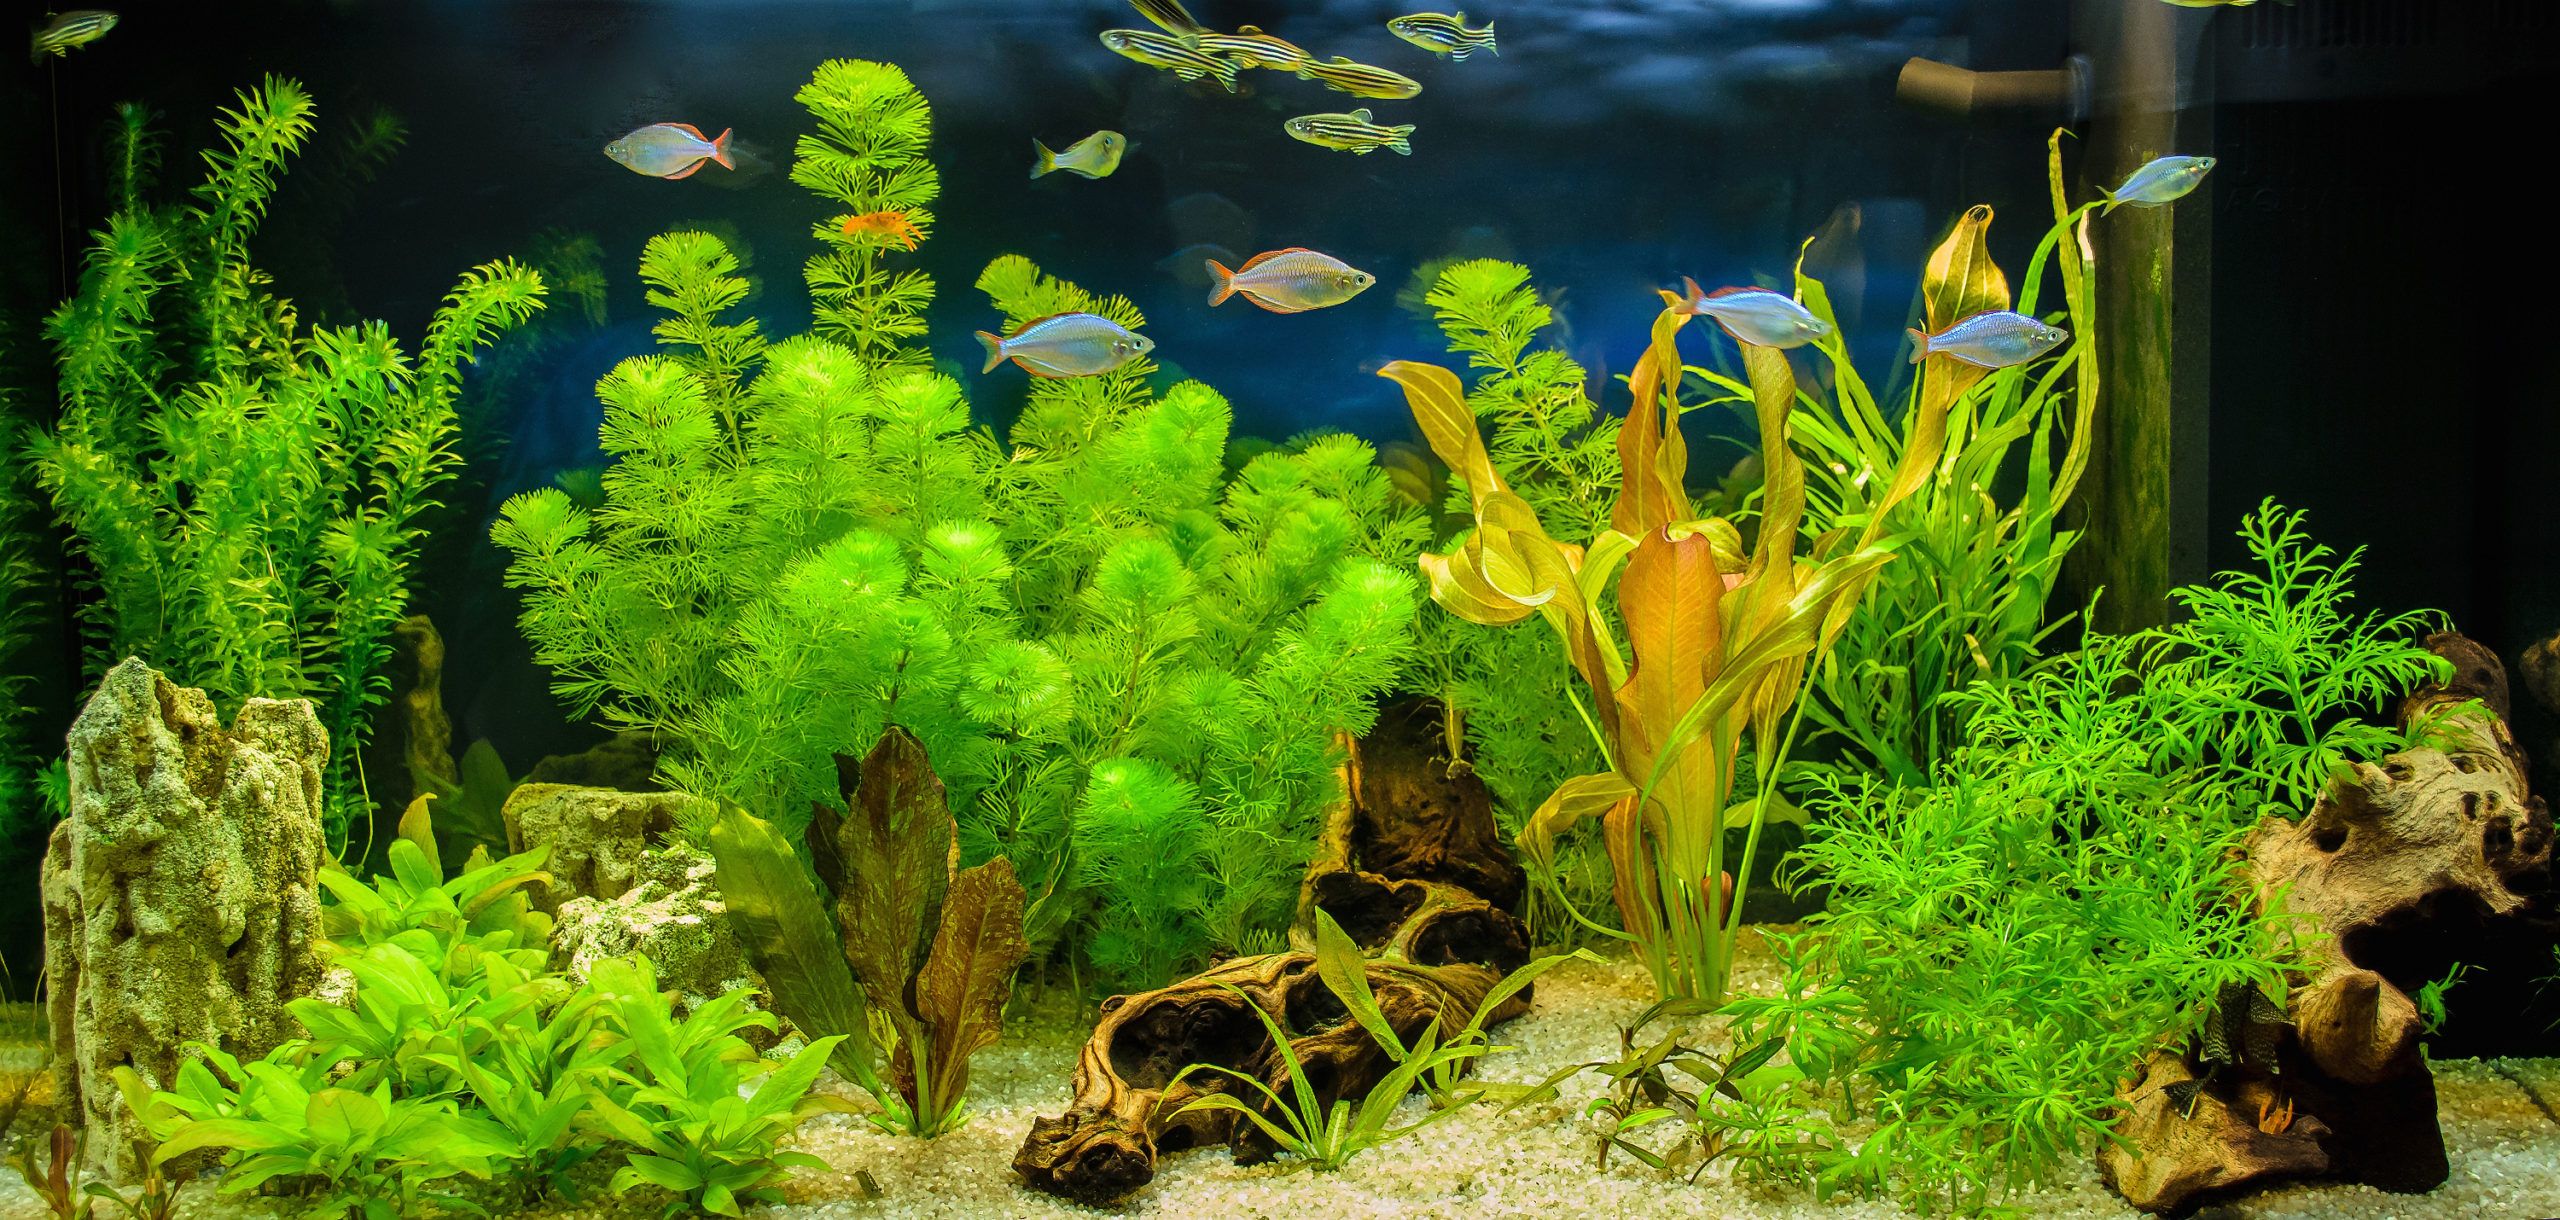 Photos Meilleure Couleur Lumiere Pour Aquarium Eau Douce, 94 000+ photos de  haute qualité gratuites